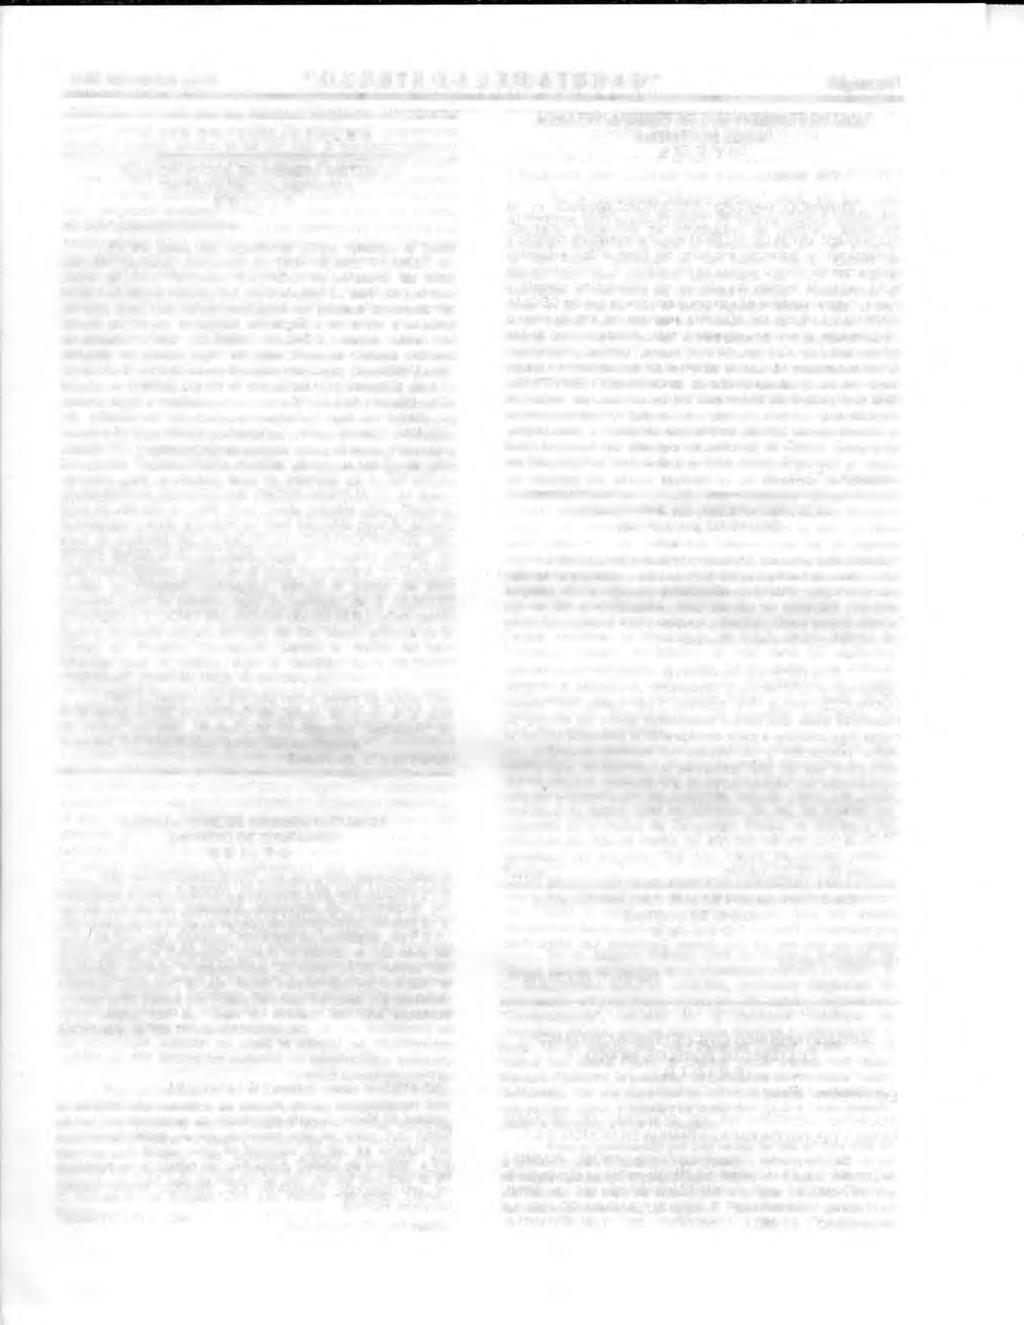 30 de marzo del 2001 "GACETA DEL GOBIERNO" Página 11 AVISOS JUDICIALES JUZGADO 4 CIVIL DE PRIMERA INSTANCIA DISTRITO DE TLALNEPANTLA SE CONVOCAN POSTORES.